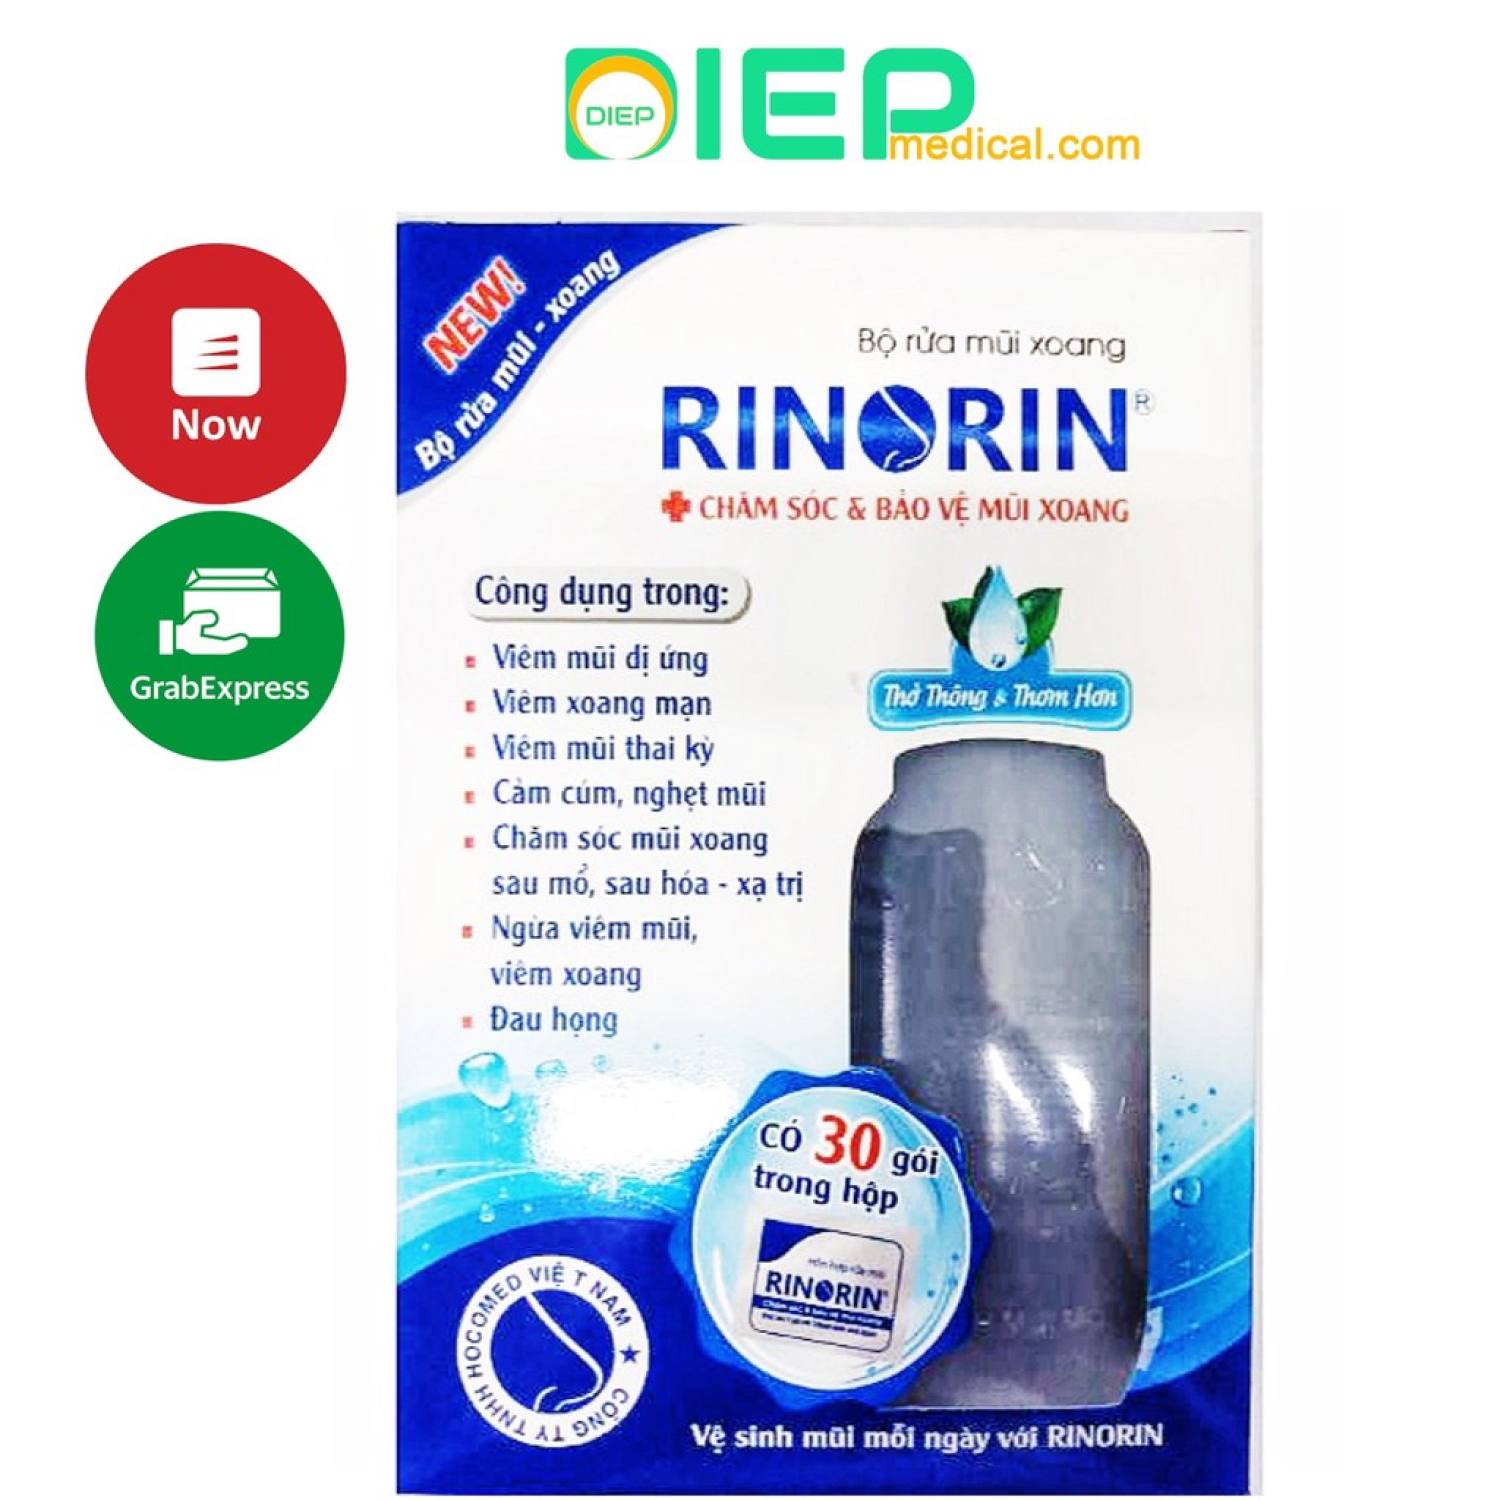 RINORIN Bình + 30 gói muối rửa - Bộ rửa mũi xoang kèm 30 gói hỗn hợp rửa